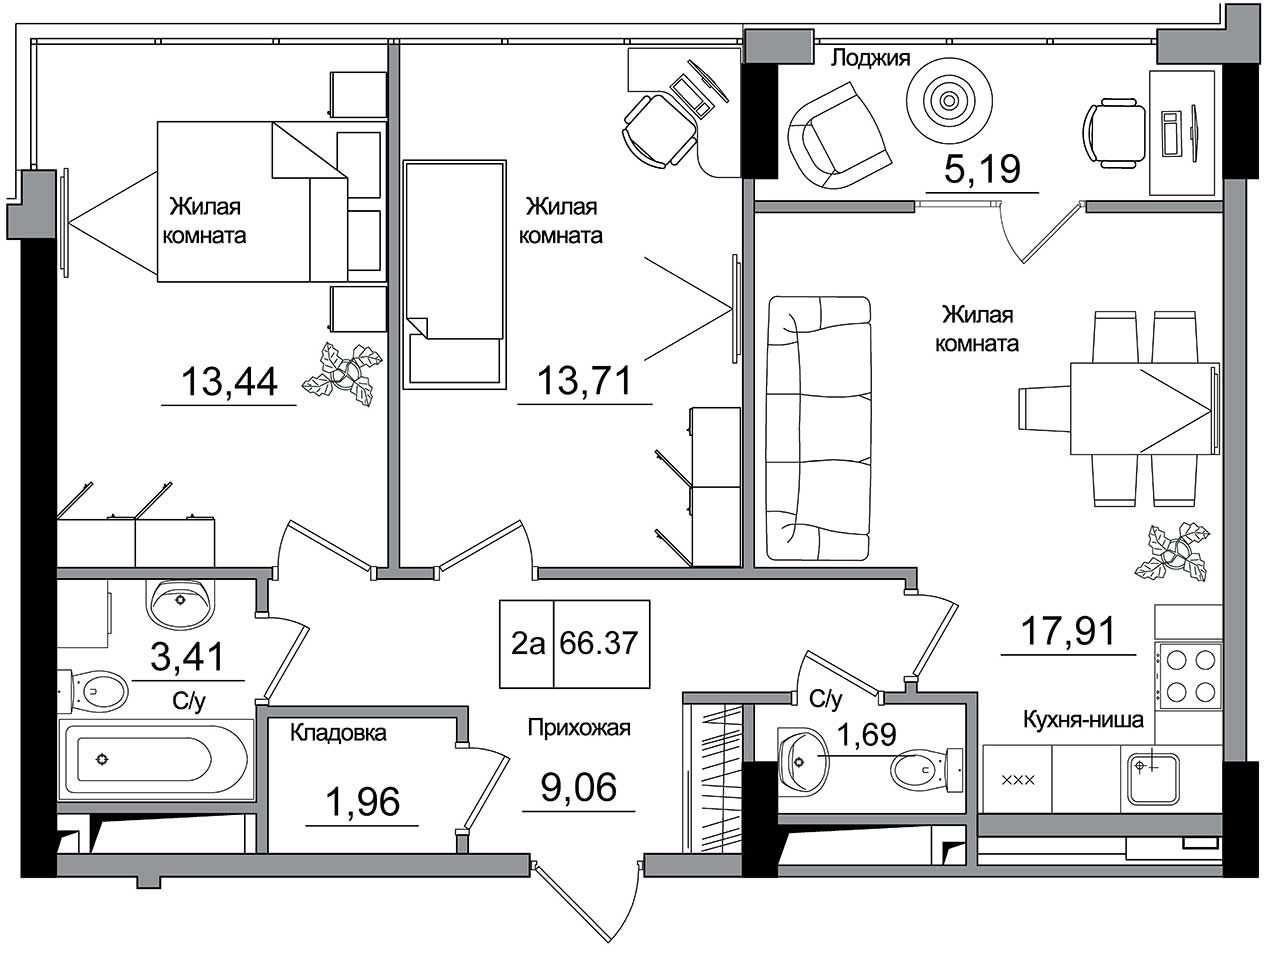 Планування 2-к квартира площею 66.37м2, AB-16-06/00006.